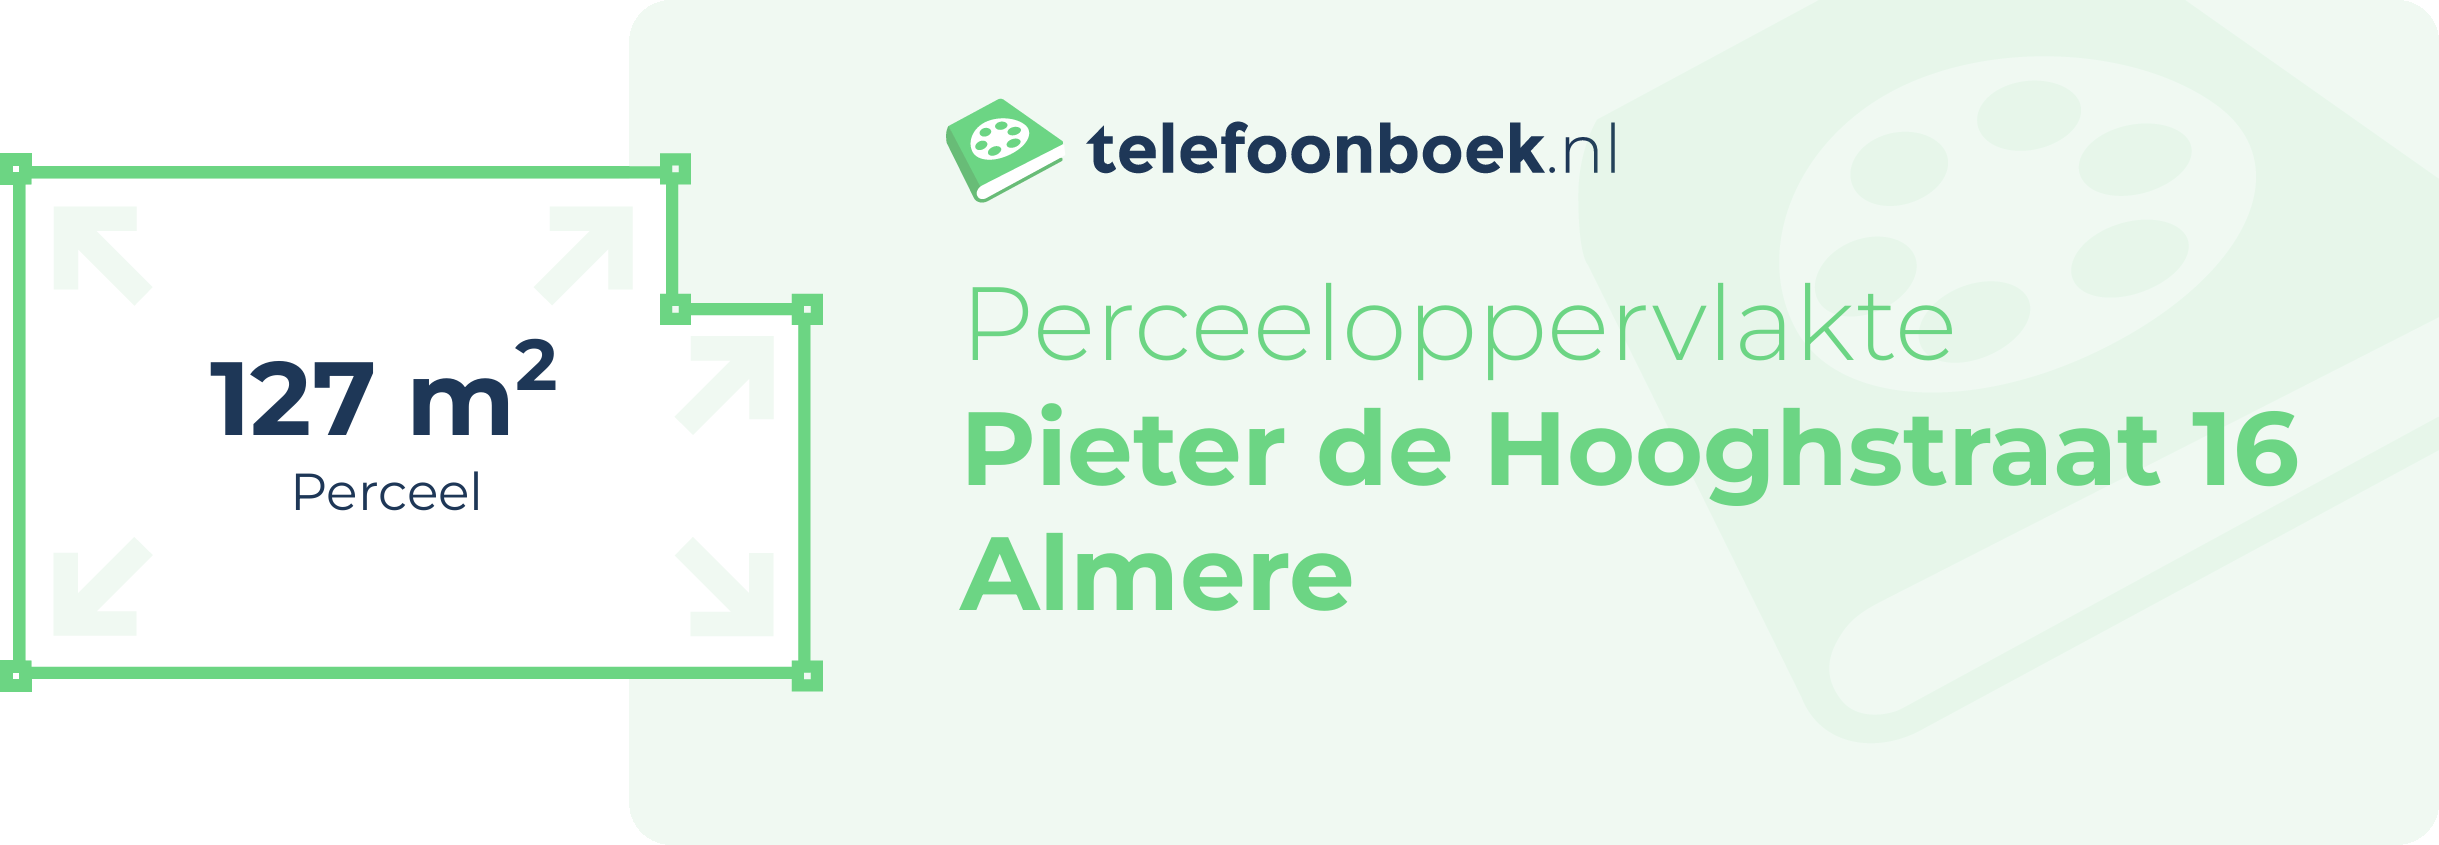 Perceeloppervlakte Pieter De Hooghstraat 16 Almere